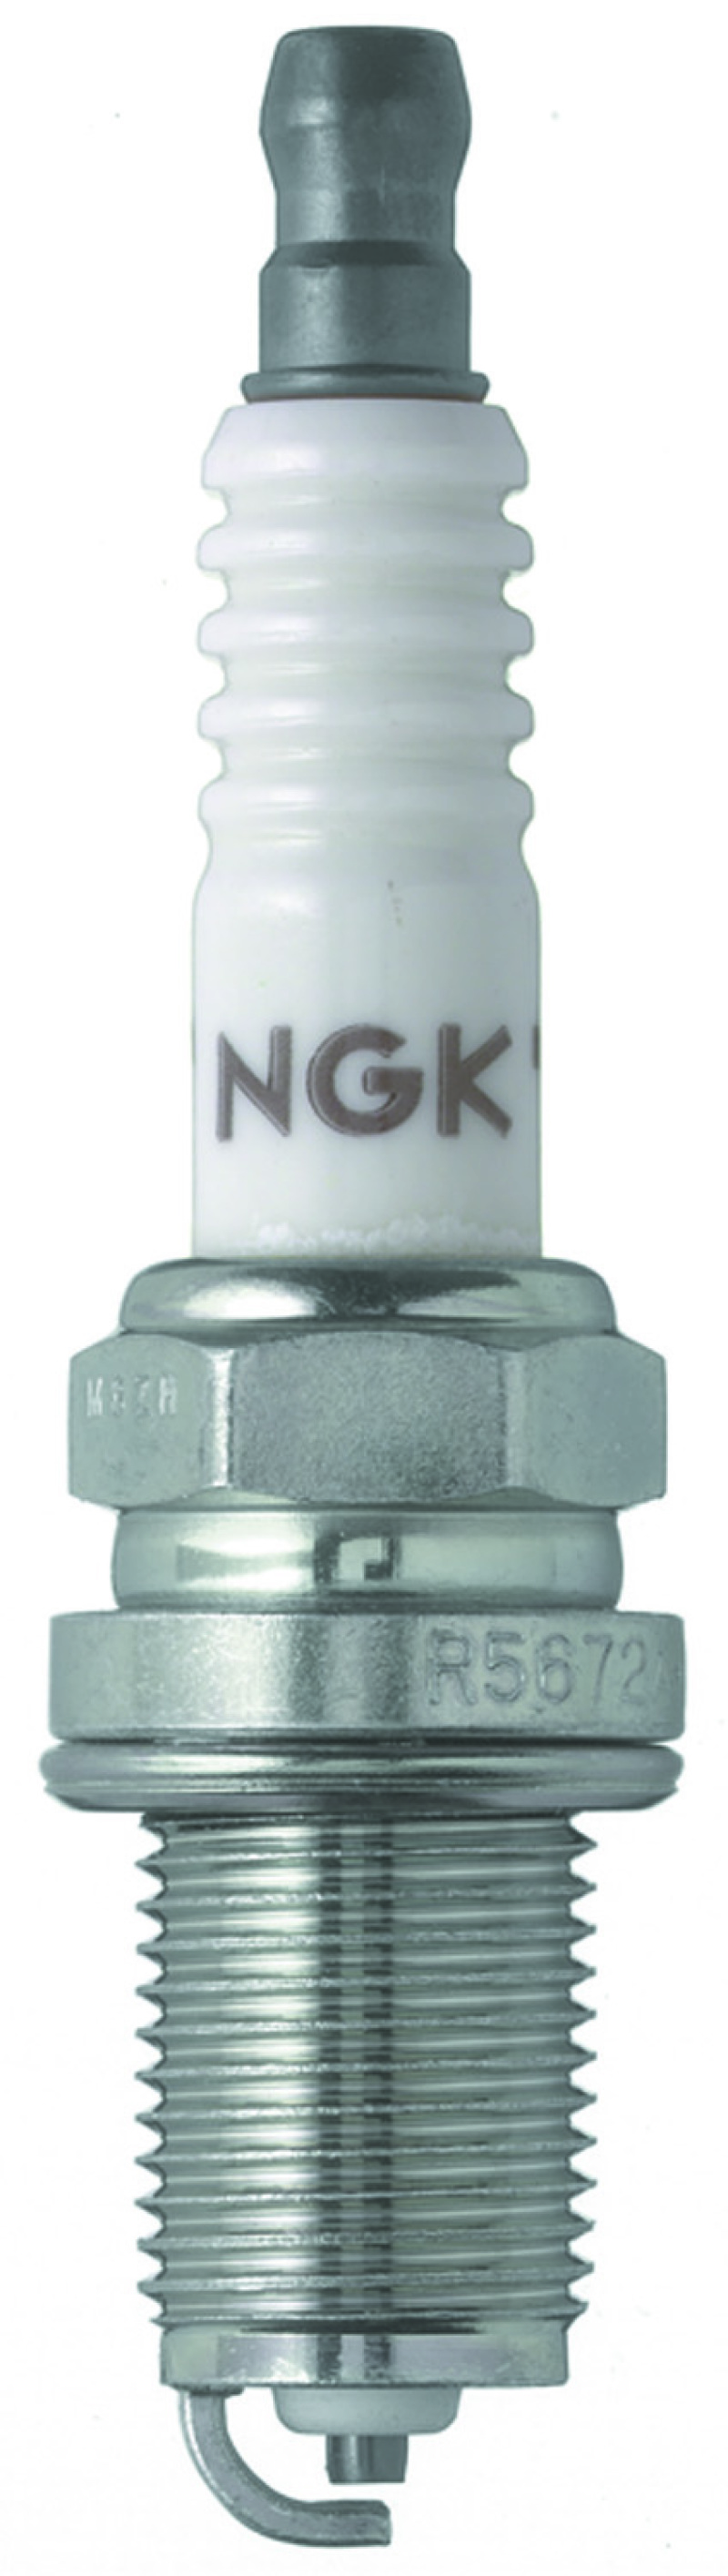 NGK Racing Spark Plug Box of 4 (R5672A-10) - 7942